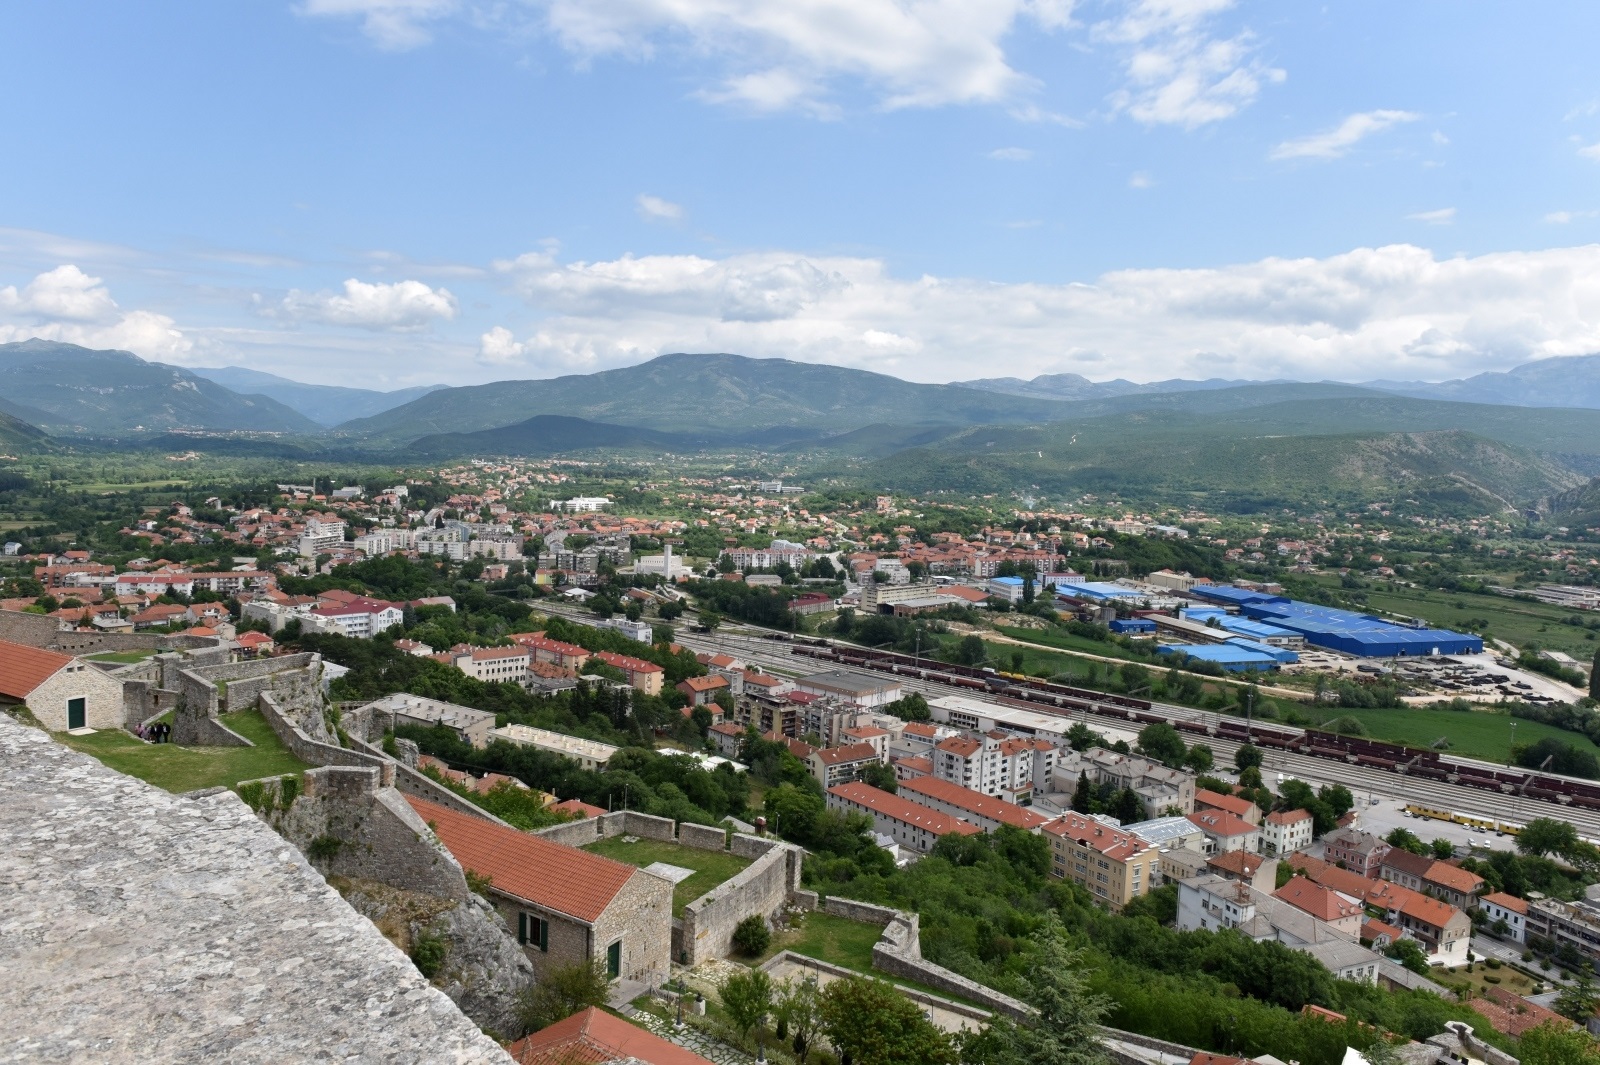 30.05.2020., Knin - Pogled sa tvrdjave na grad Knin.
Photo: Hrvoje Jelavic/PIXSELL